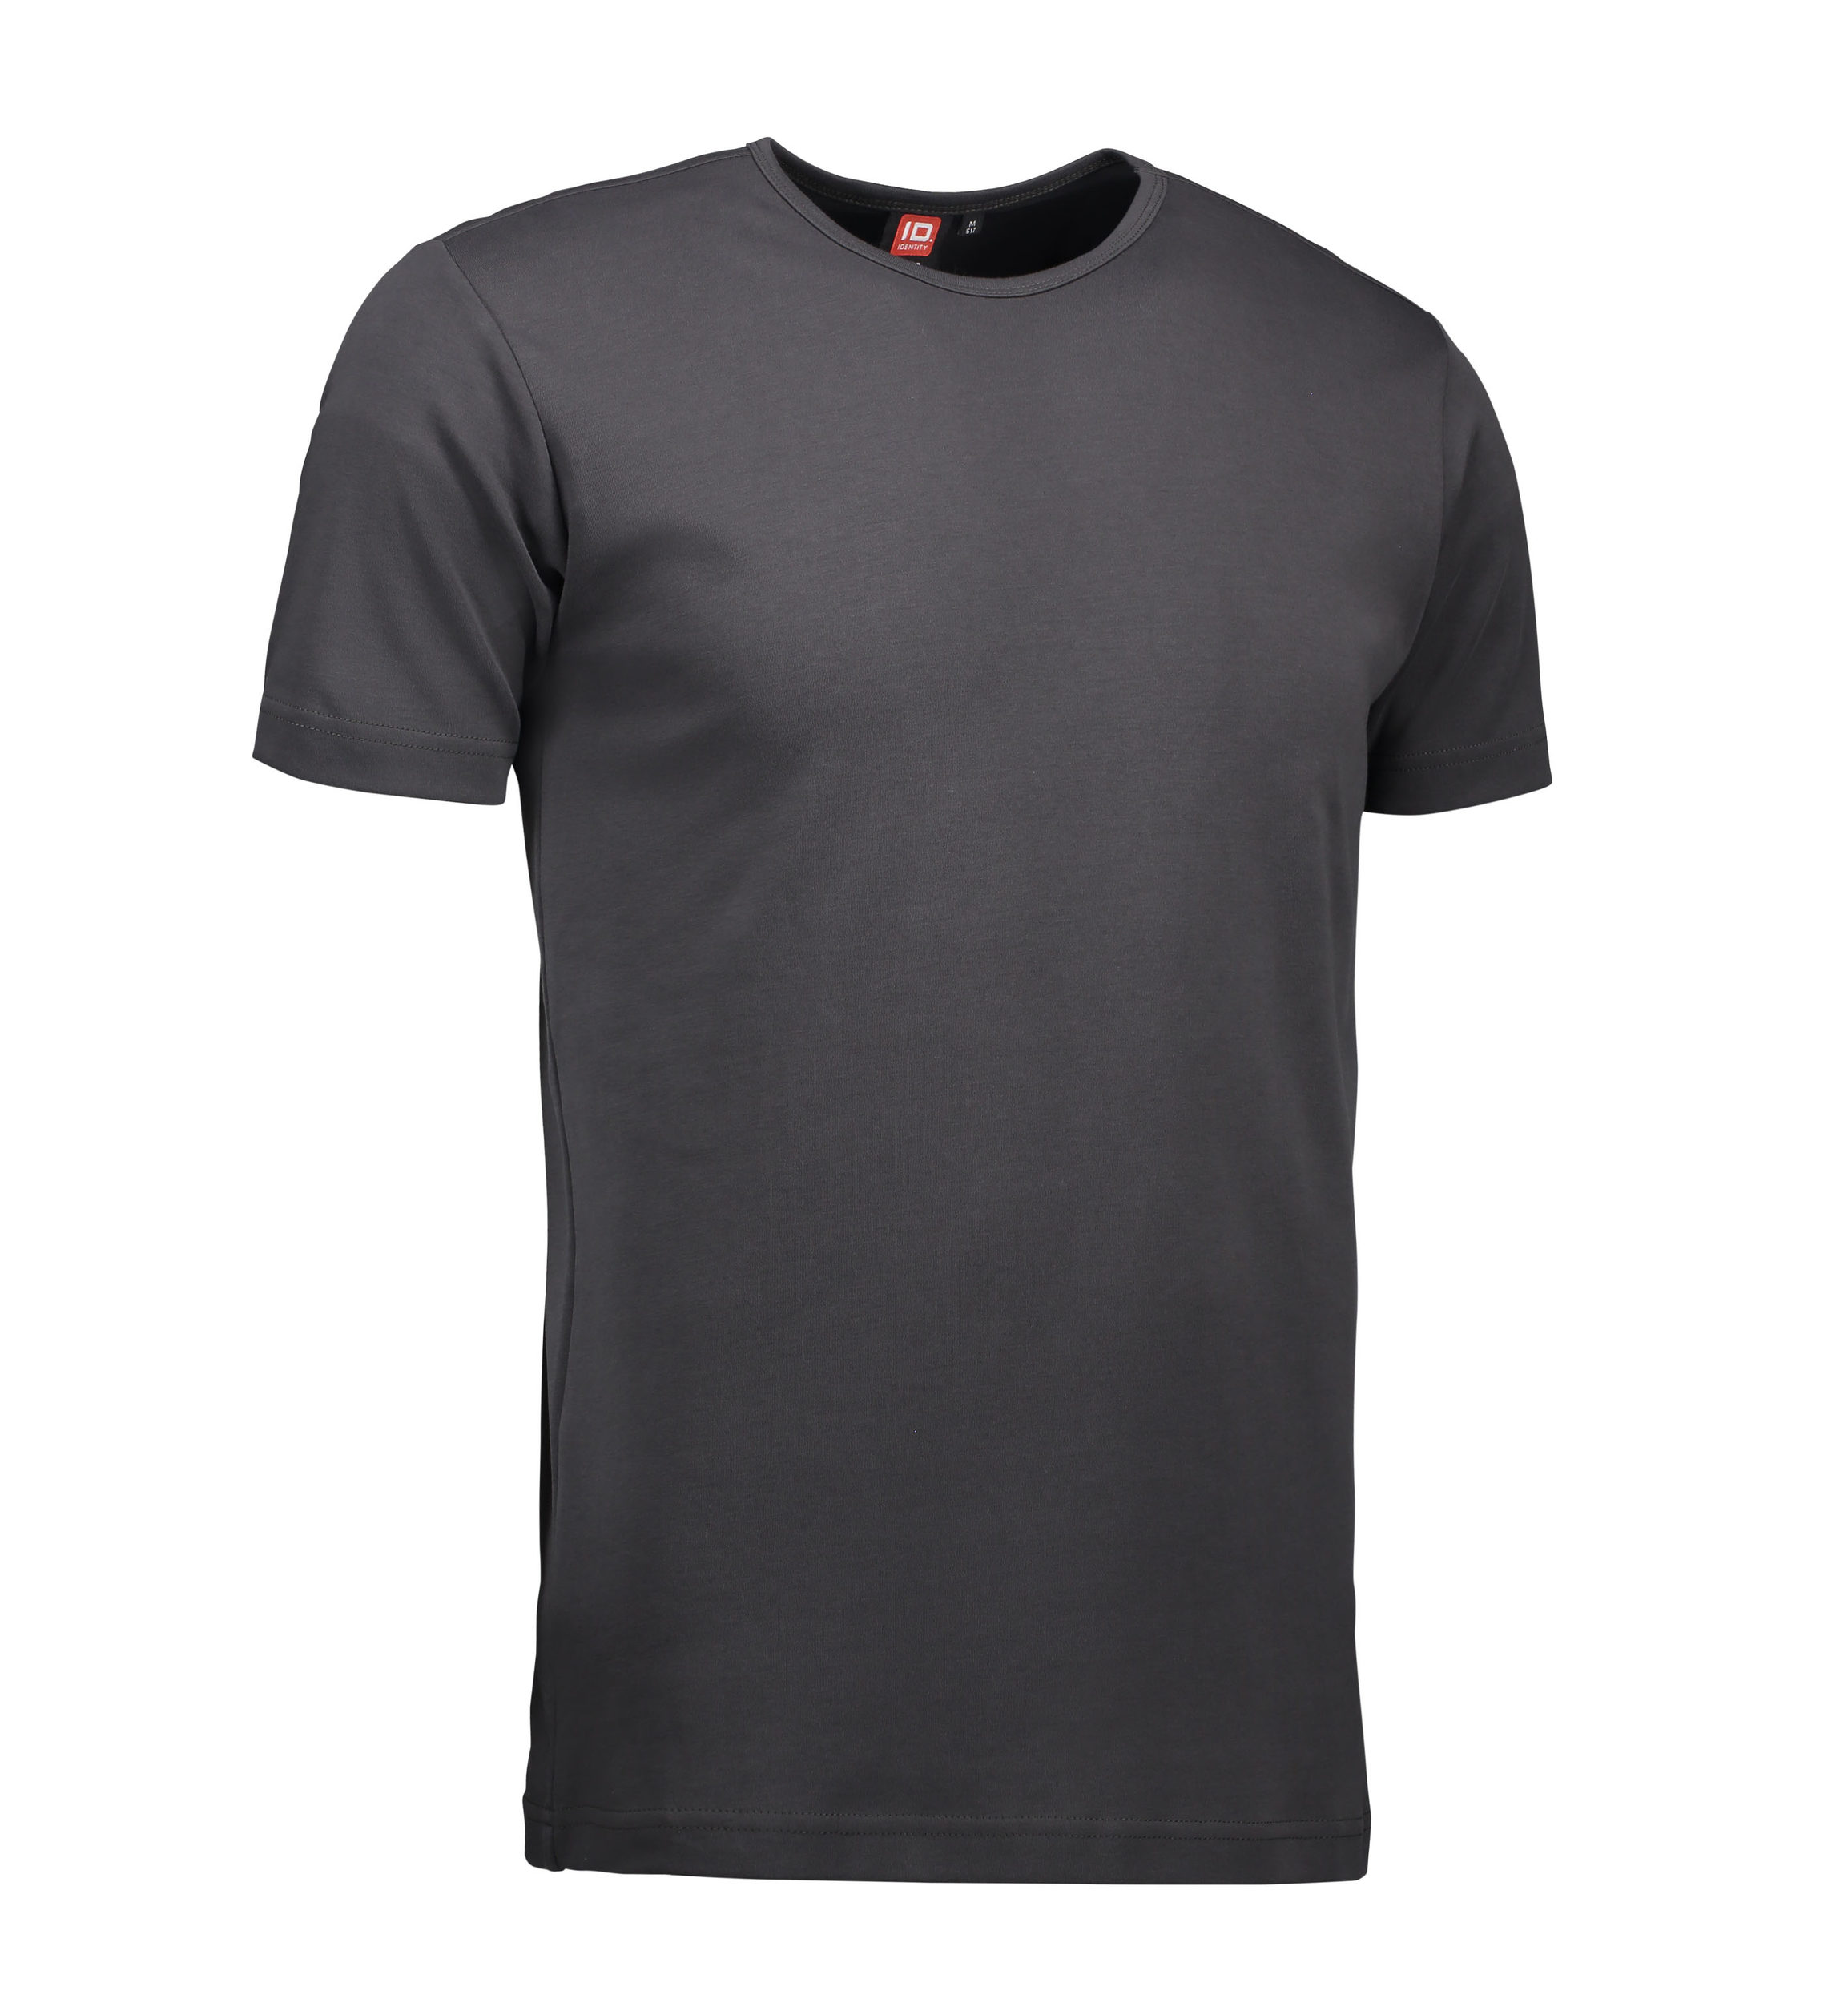 Billede af Koks grå t-shirt med rund hals til mænd - 2XL hos Sygeplejebutikken.dk